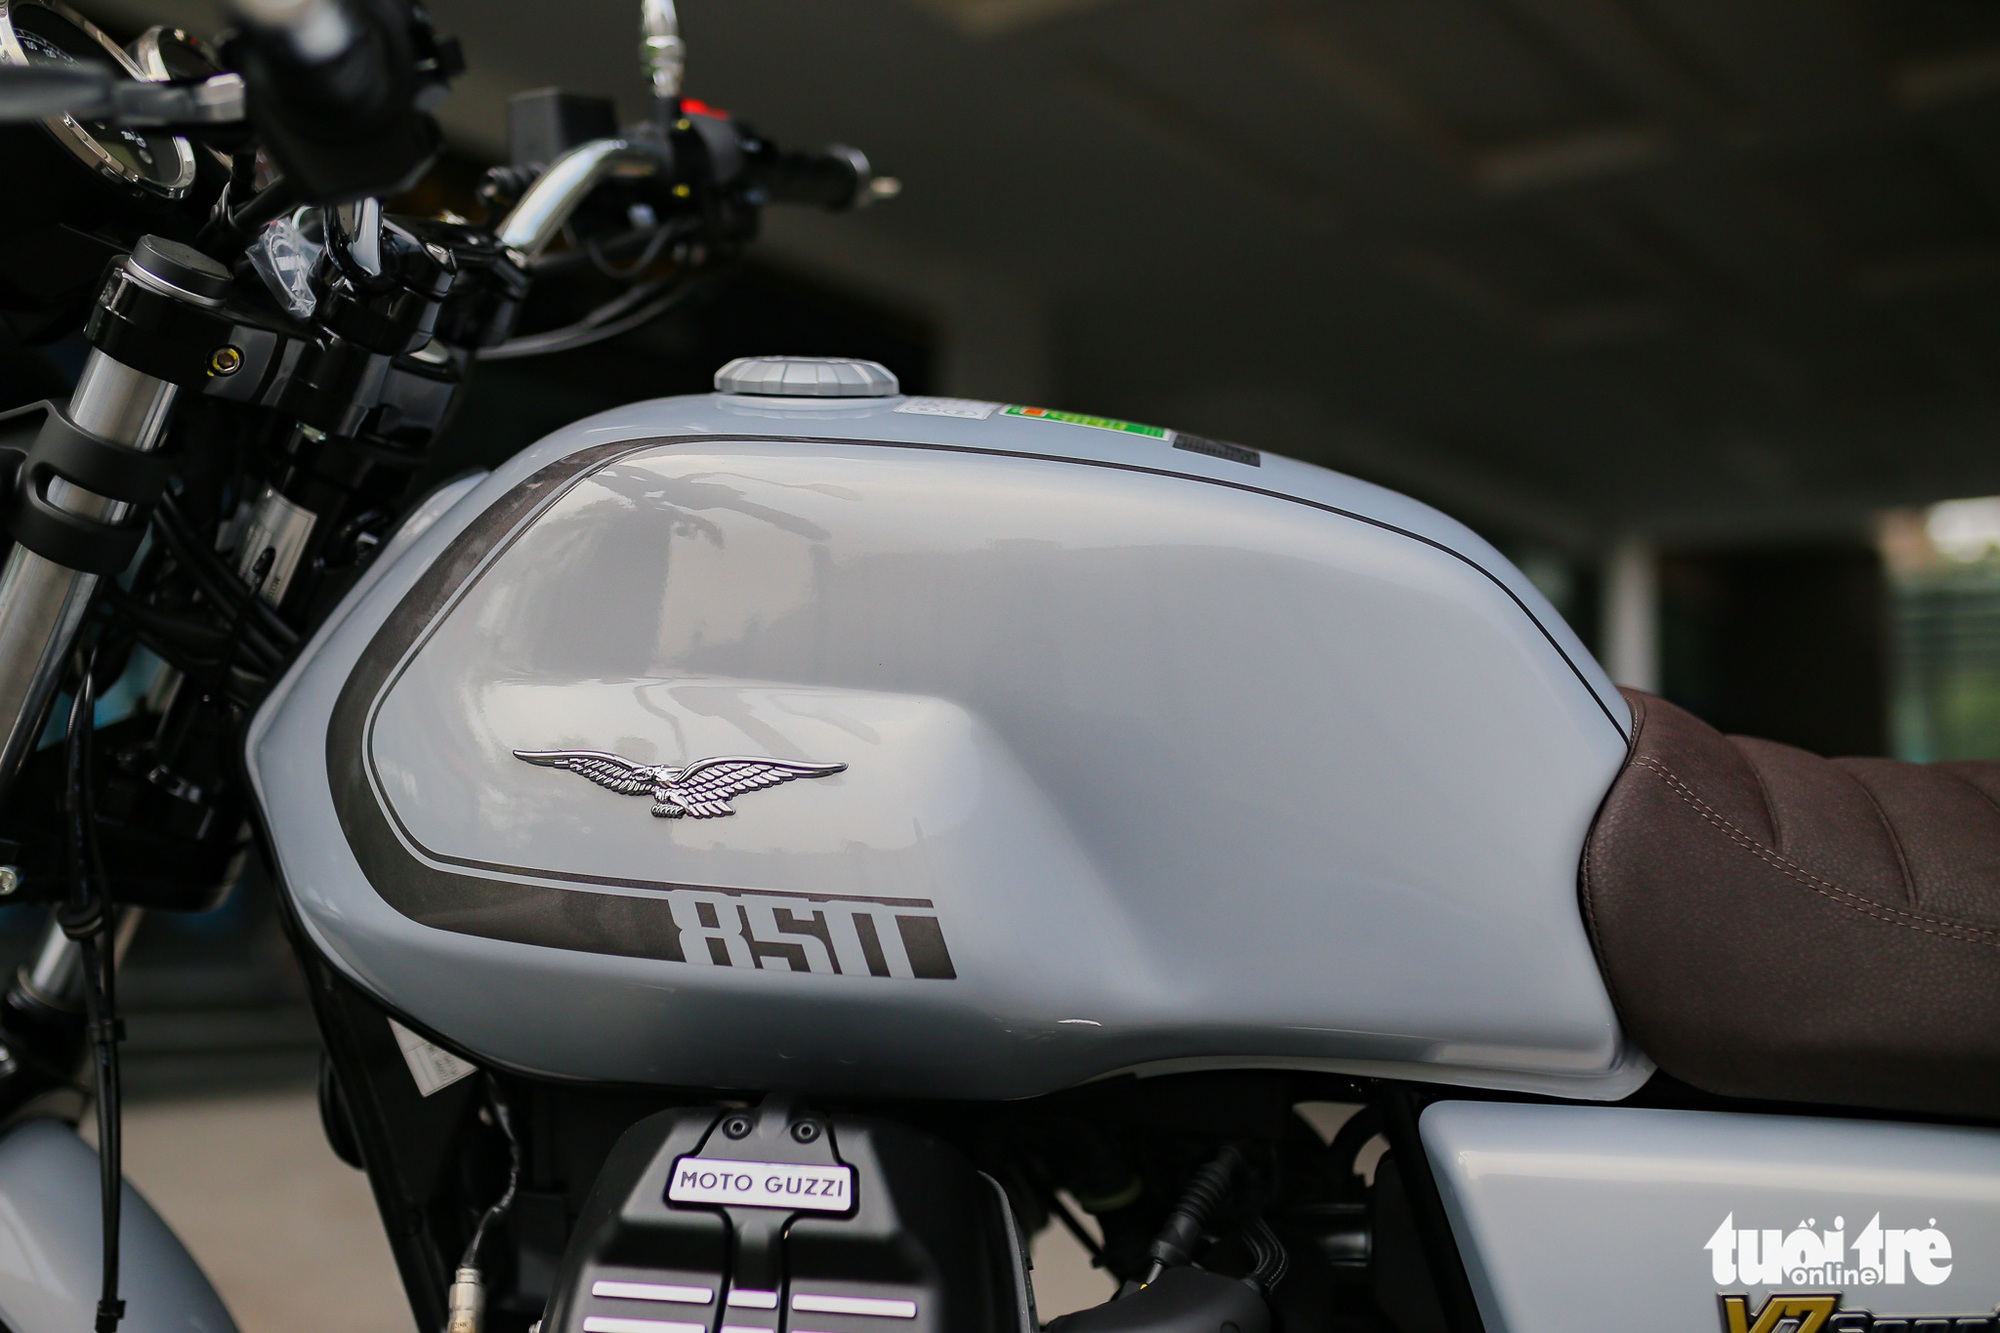 Chi tiết Moto Guzzi V7 Special 850 giá hơn 400 triệu đồng tại Việt Nam - Ảnh 10.